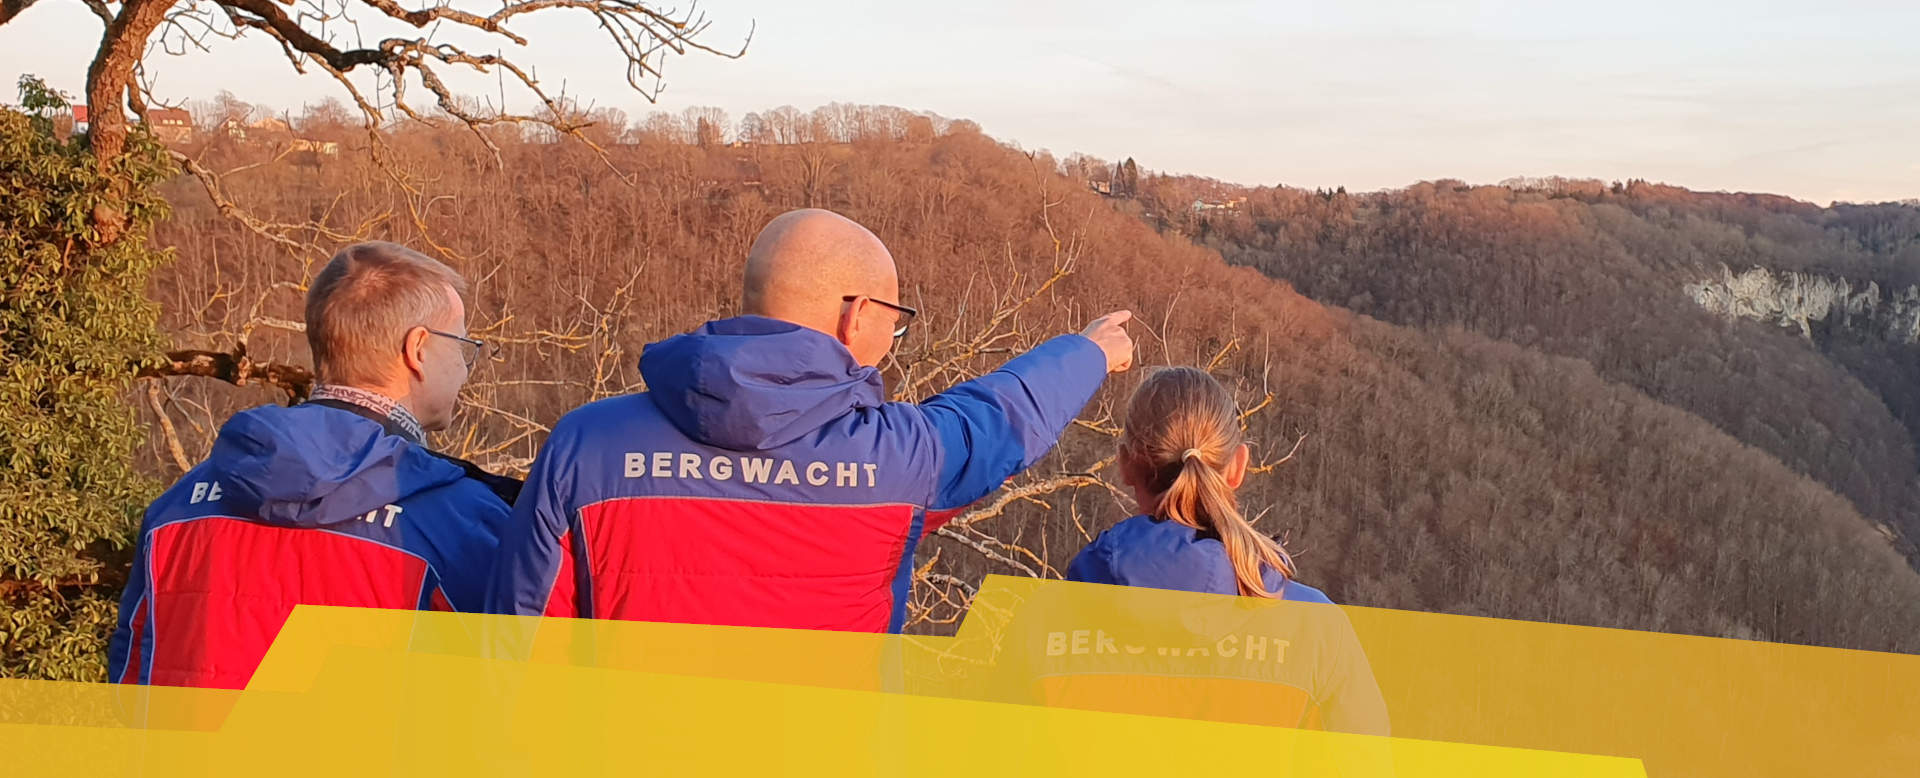 DRK Bergwacht Württemberg Mitglied werden